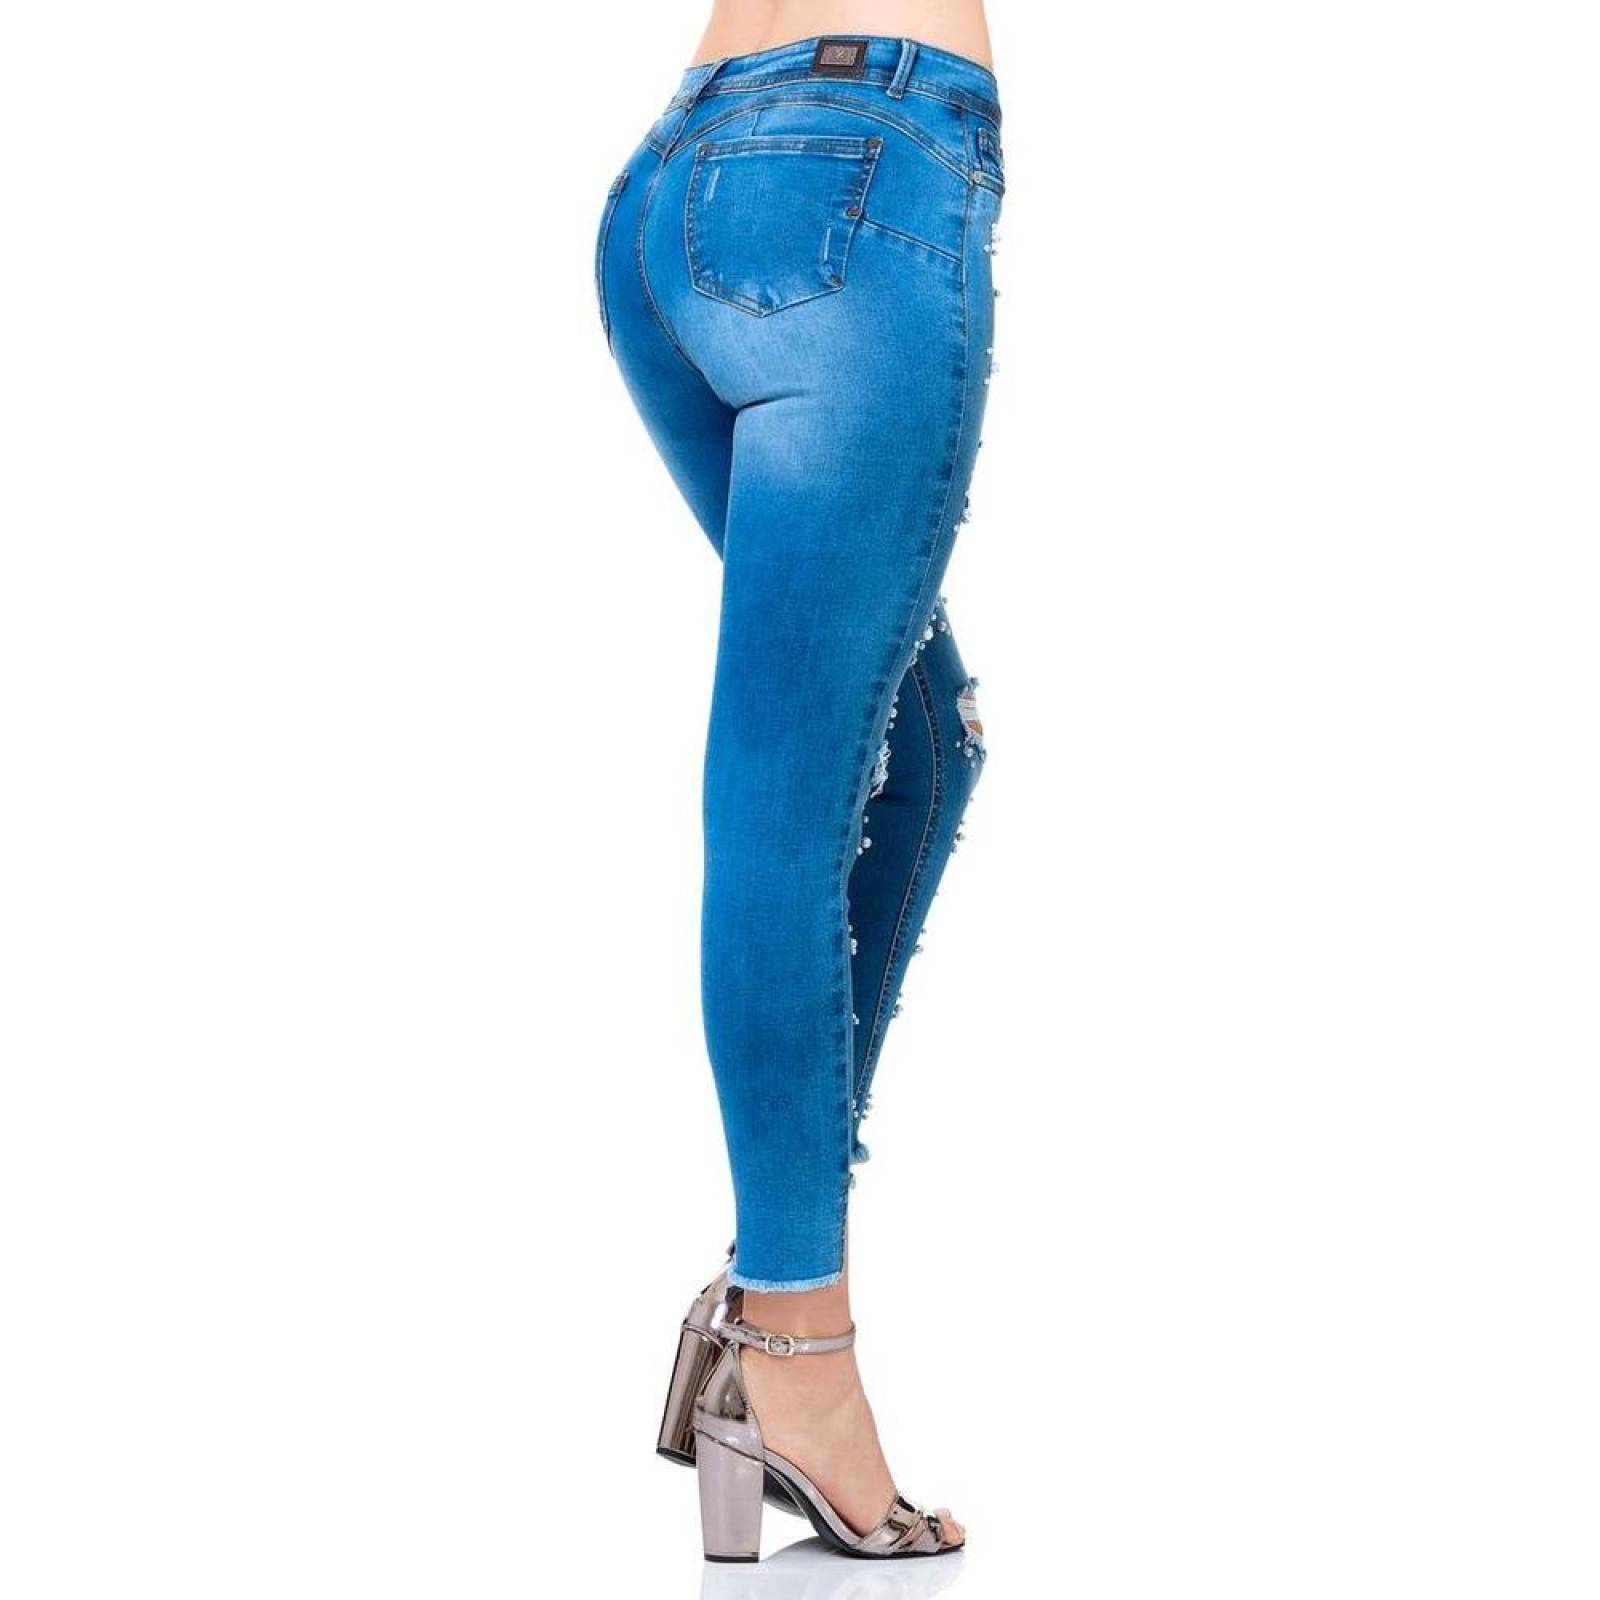 Jeans Moda Mujer Salvaje Tentación Stone 71803108 Mezclilla Stretch 